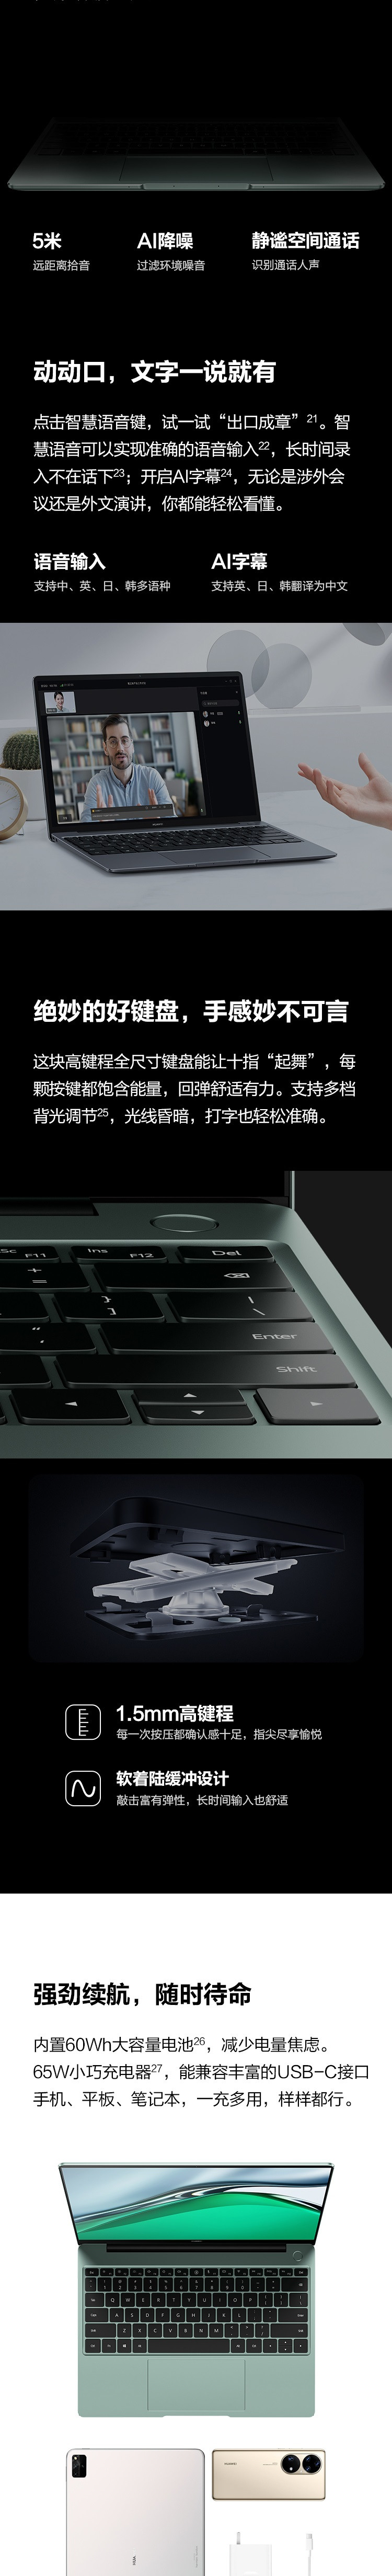 华为/HUAWEI 笔记本电脑MateBook 13s 11代酷睿i5